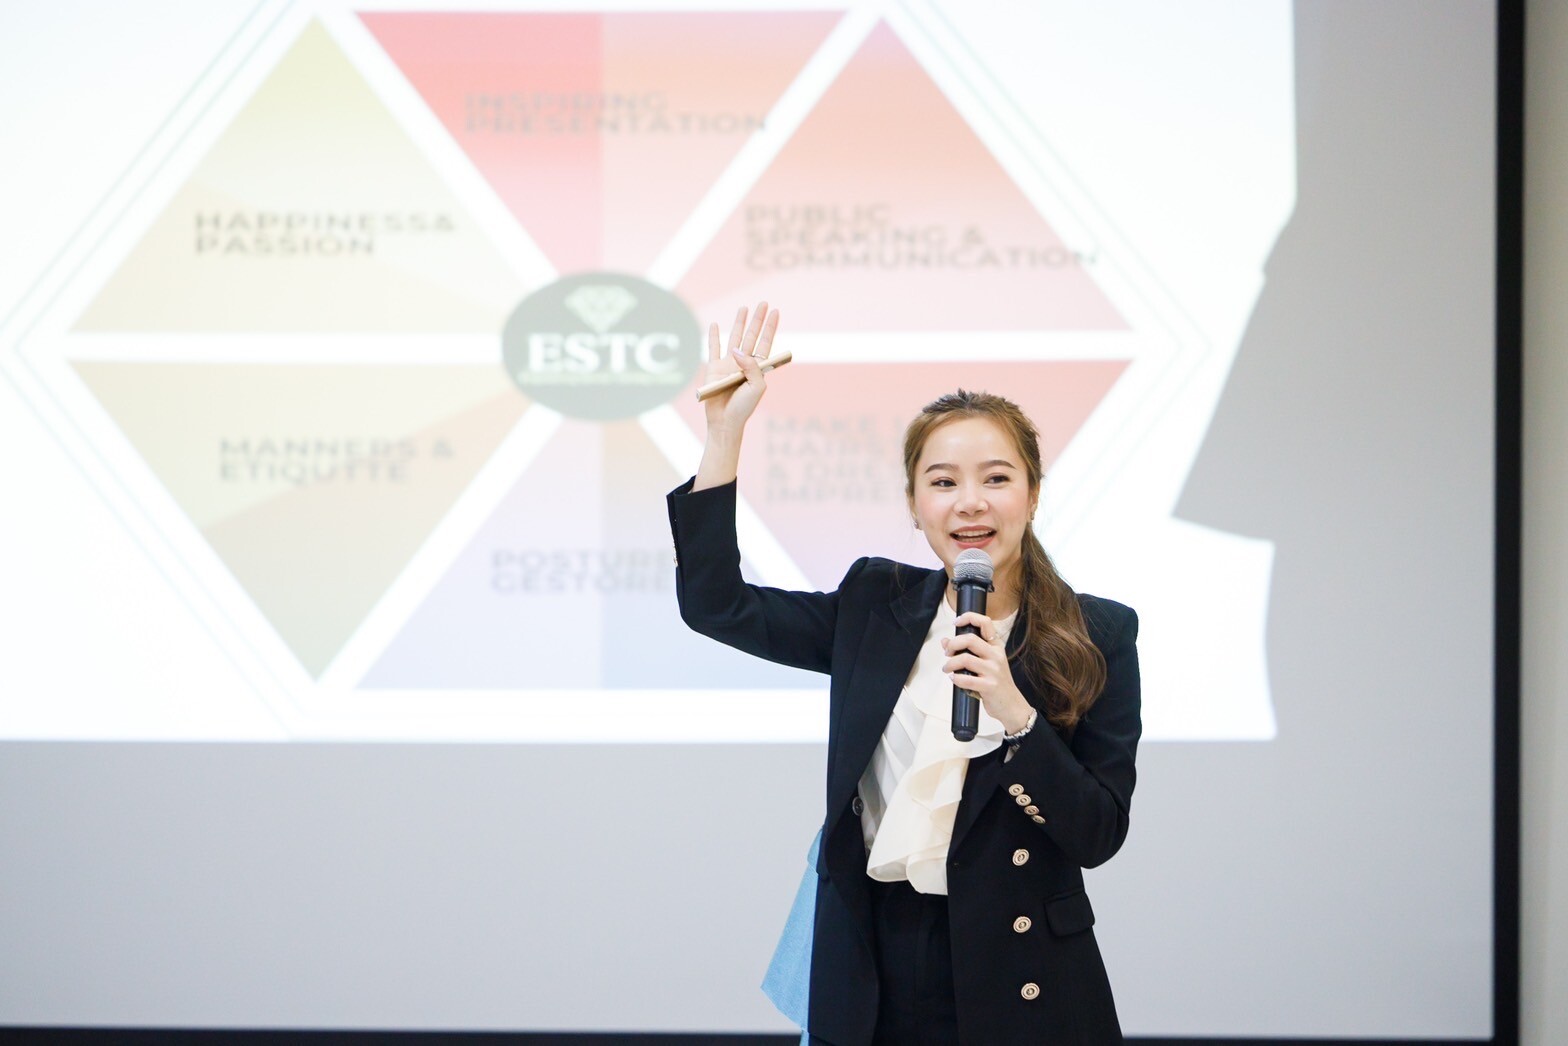 "ESTC Training Center" ตอบโจทย์การพัฒนาบุคลิกภาพและการบริการ